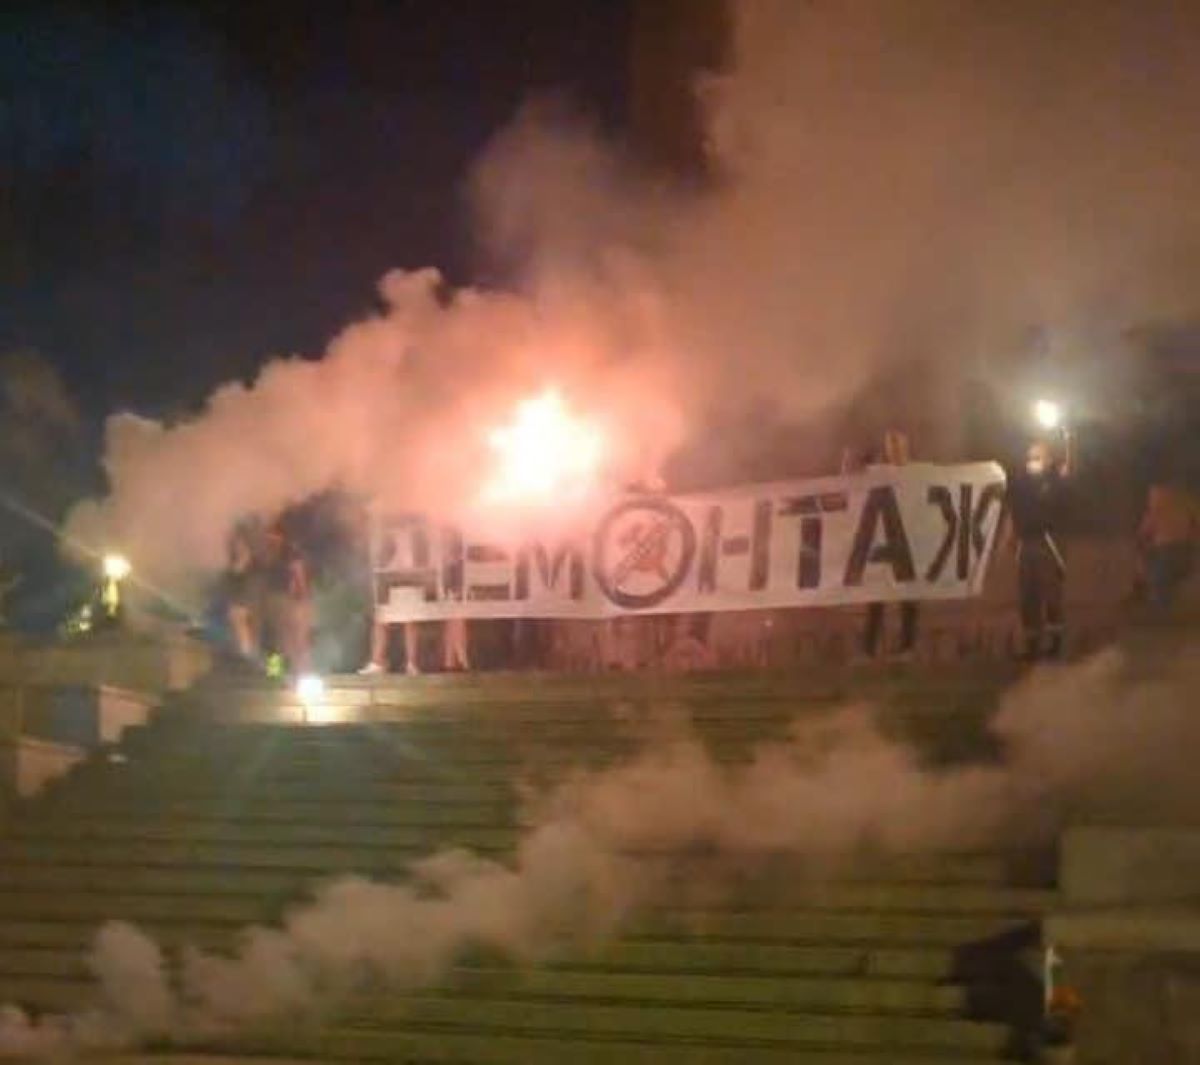 Българският хелзинкски комитет остро осъжда нападението над демонстранти пред Паметника